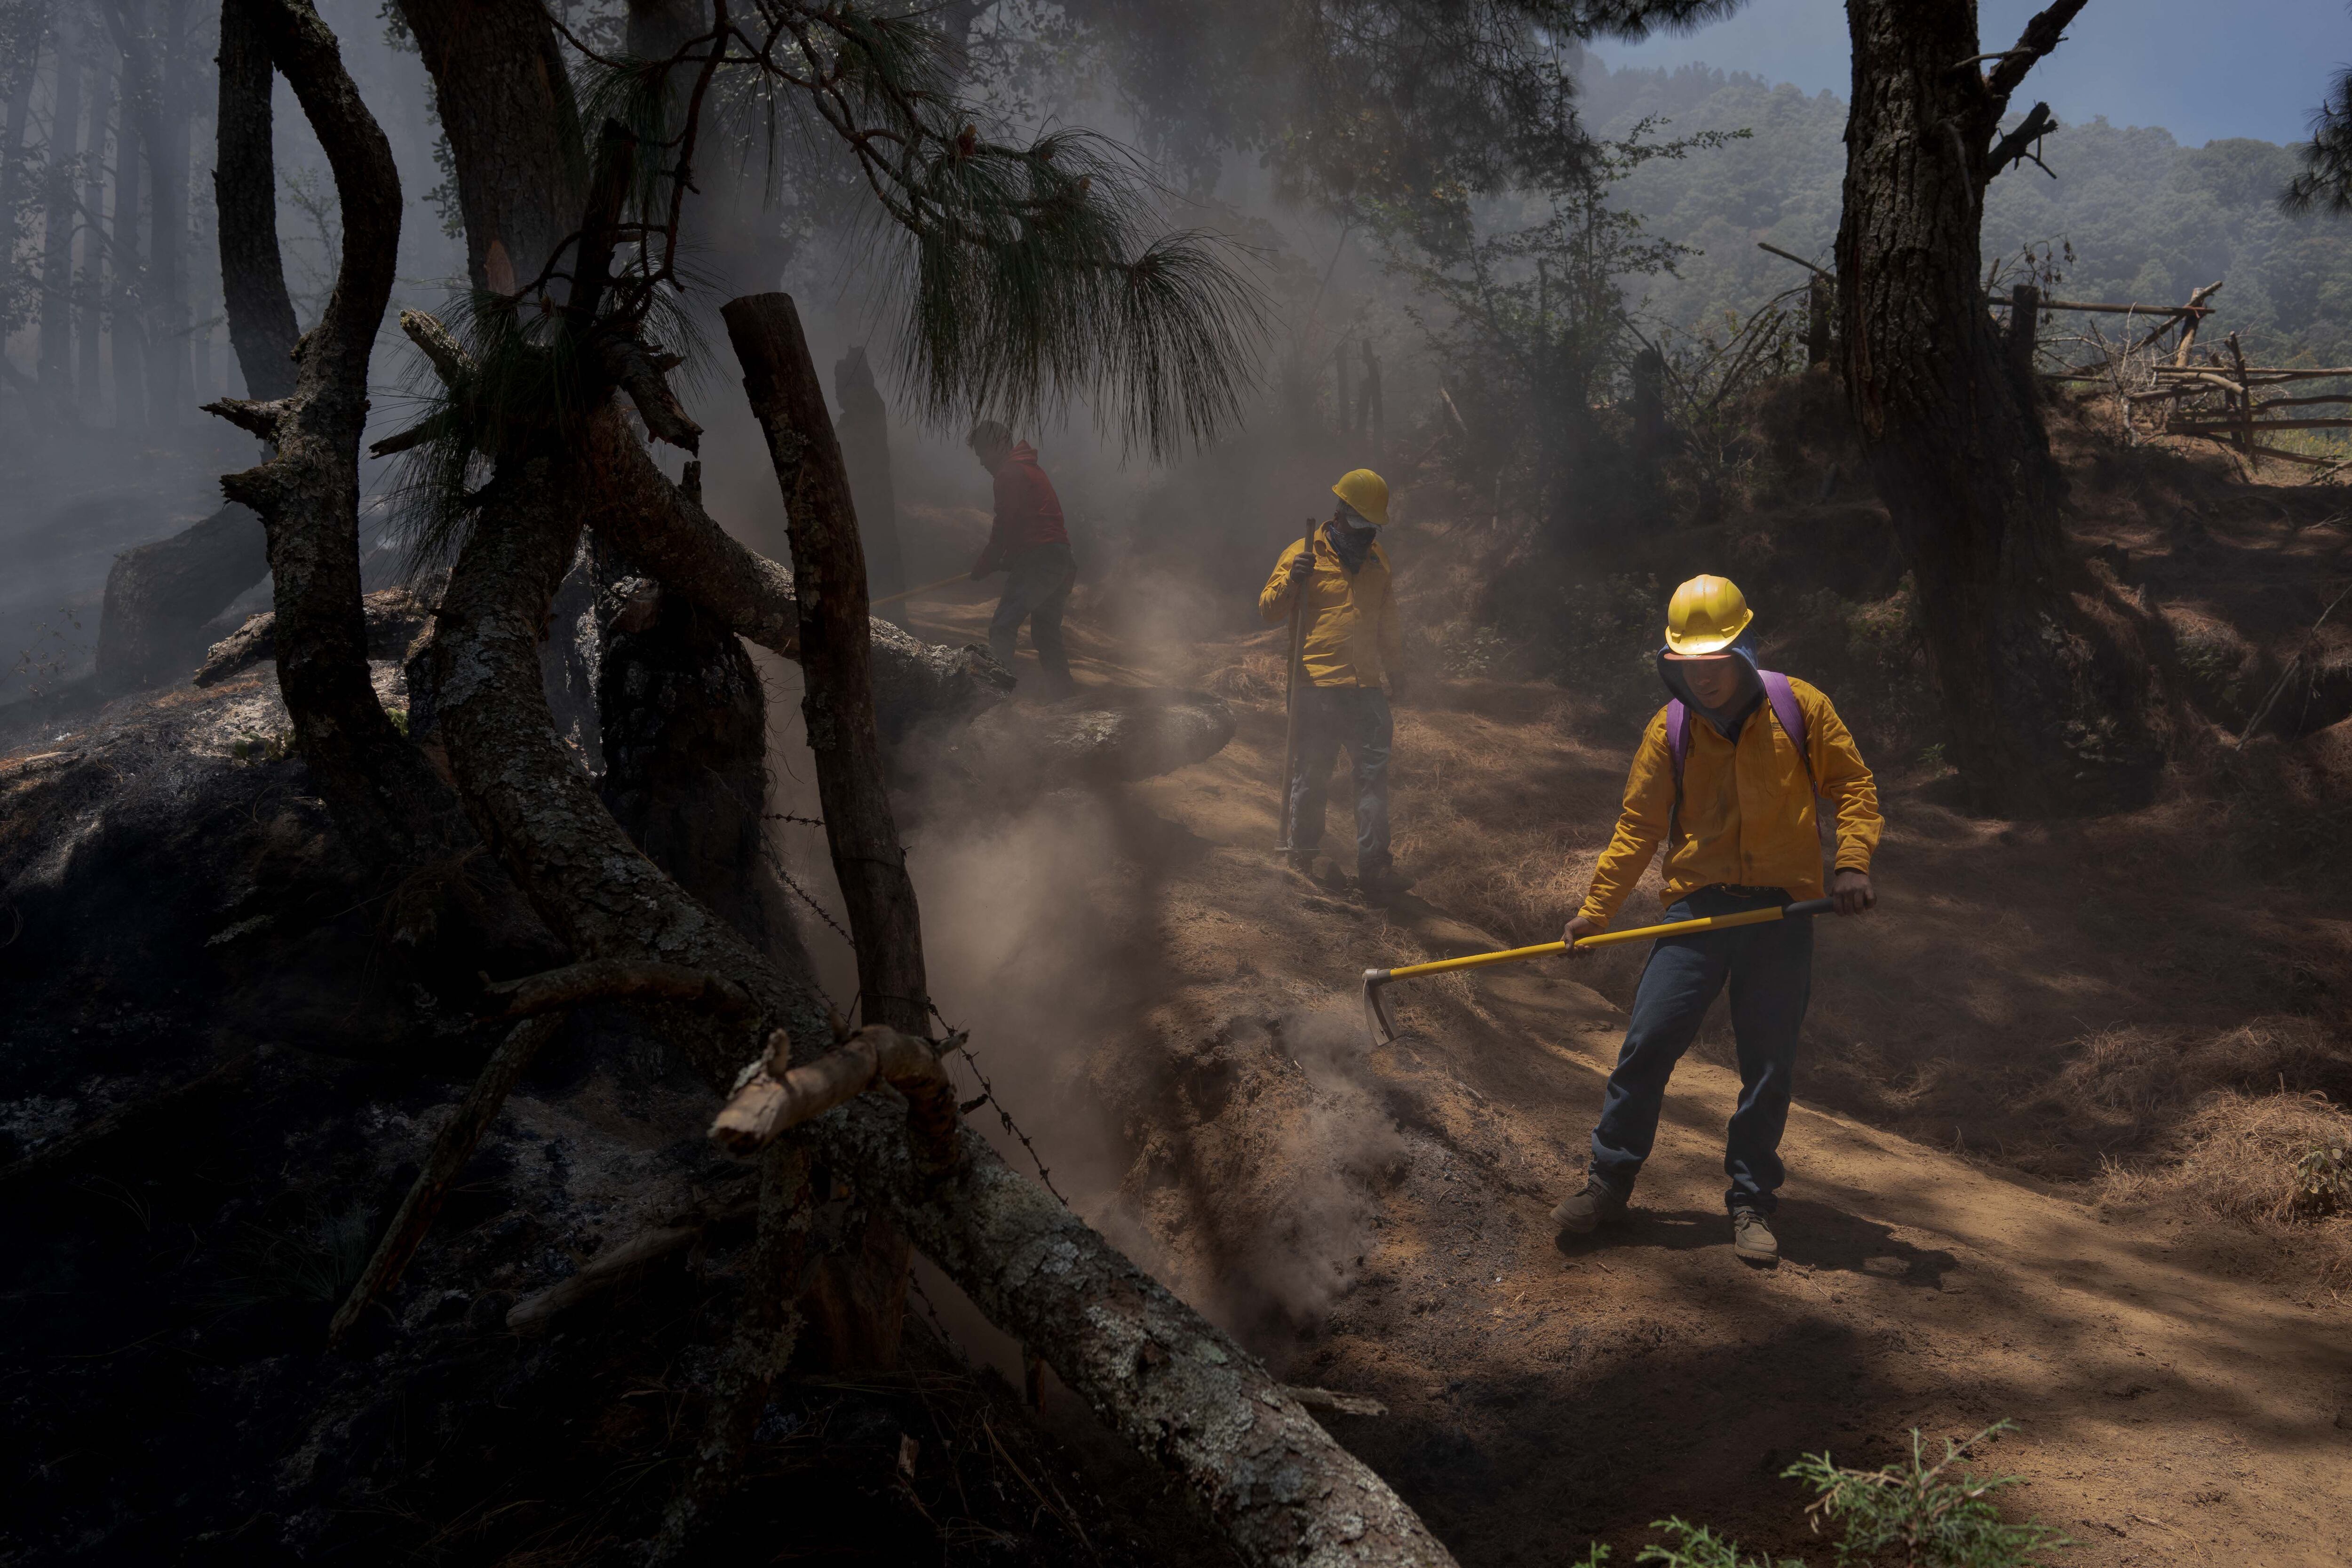 Una brigada para la prevención de incendios forestales trabaja en los bosques alrededor de Cherán, en abril.